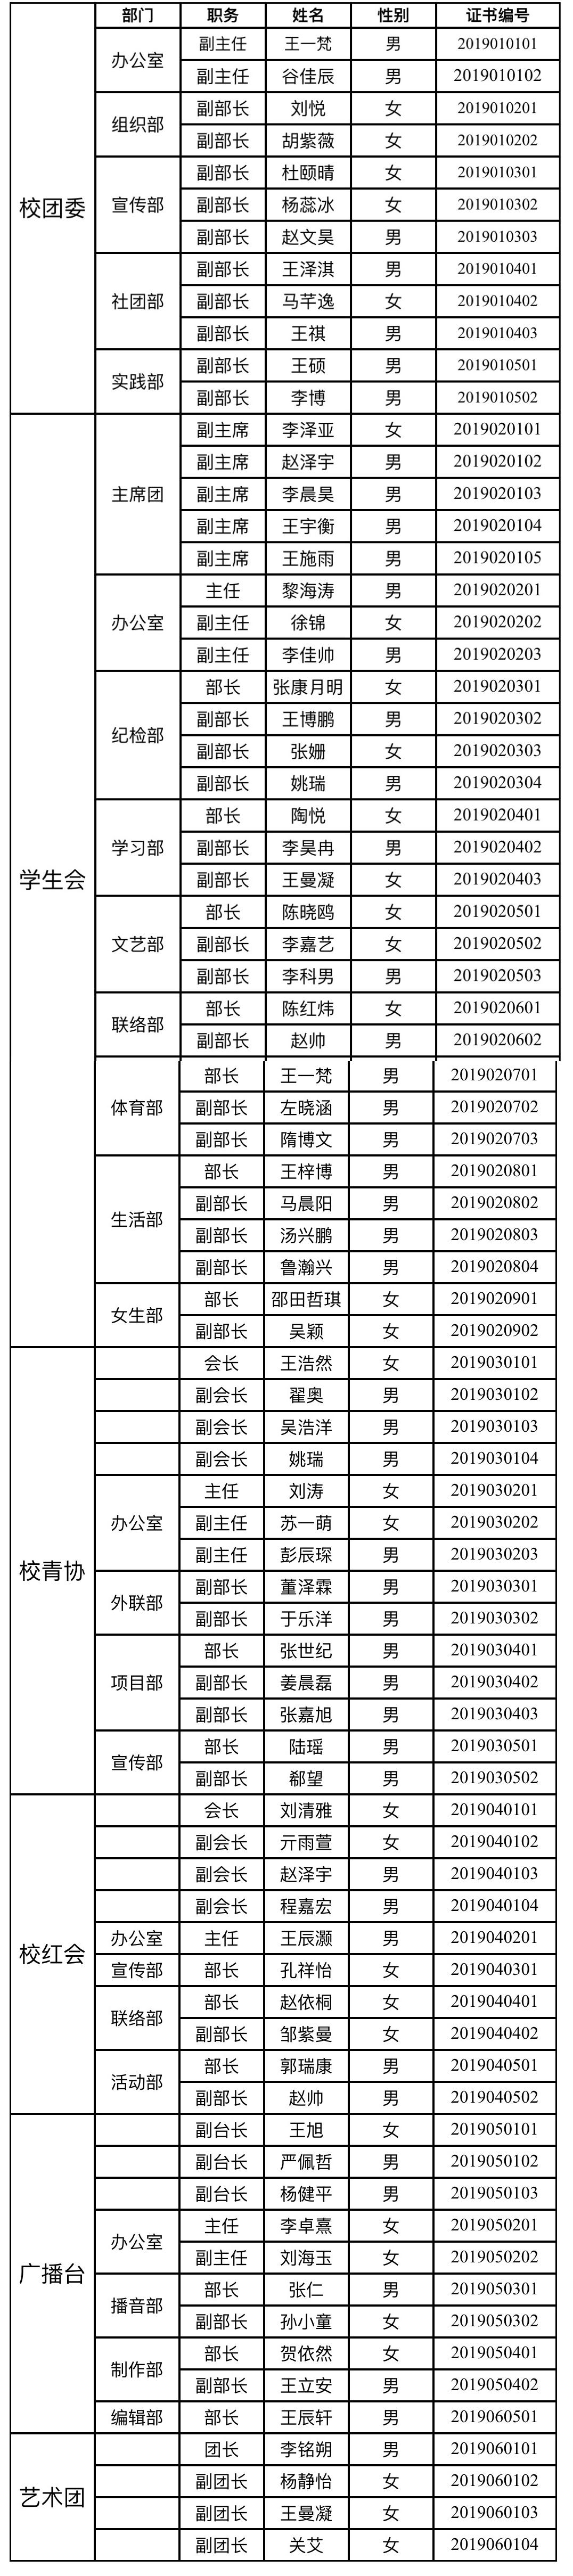 2021年校团委学生干部名单公示-共青团